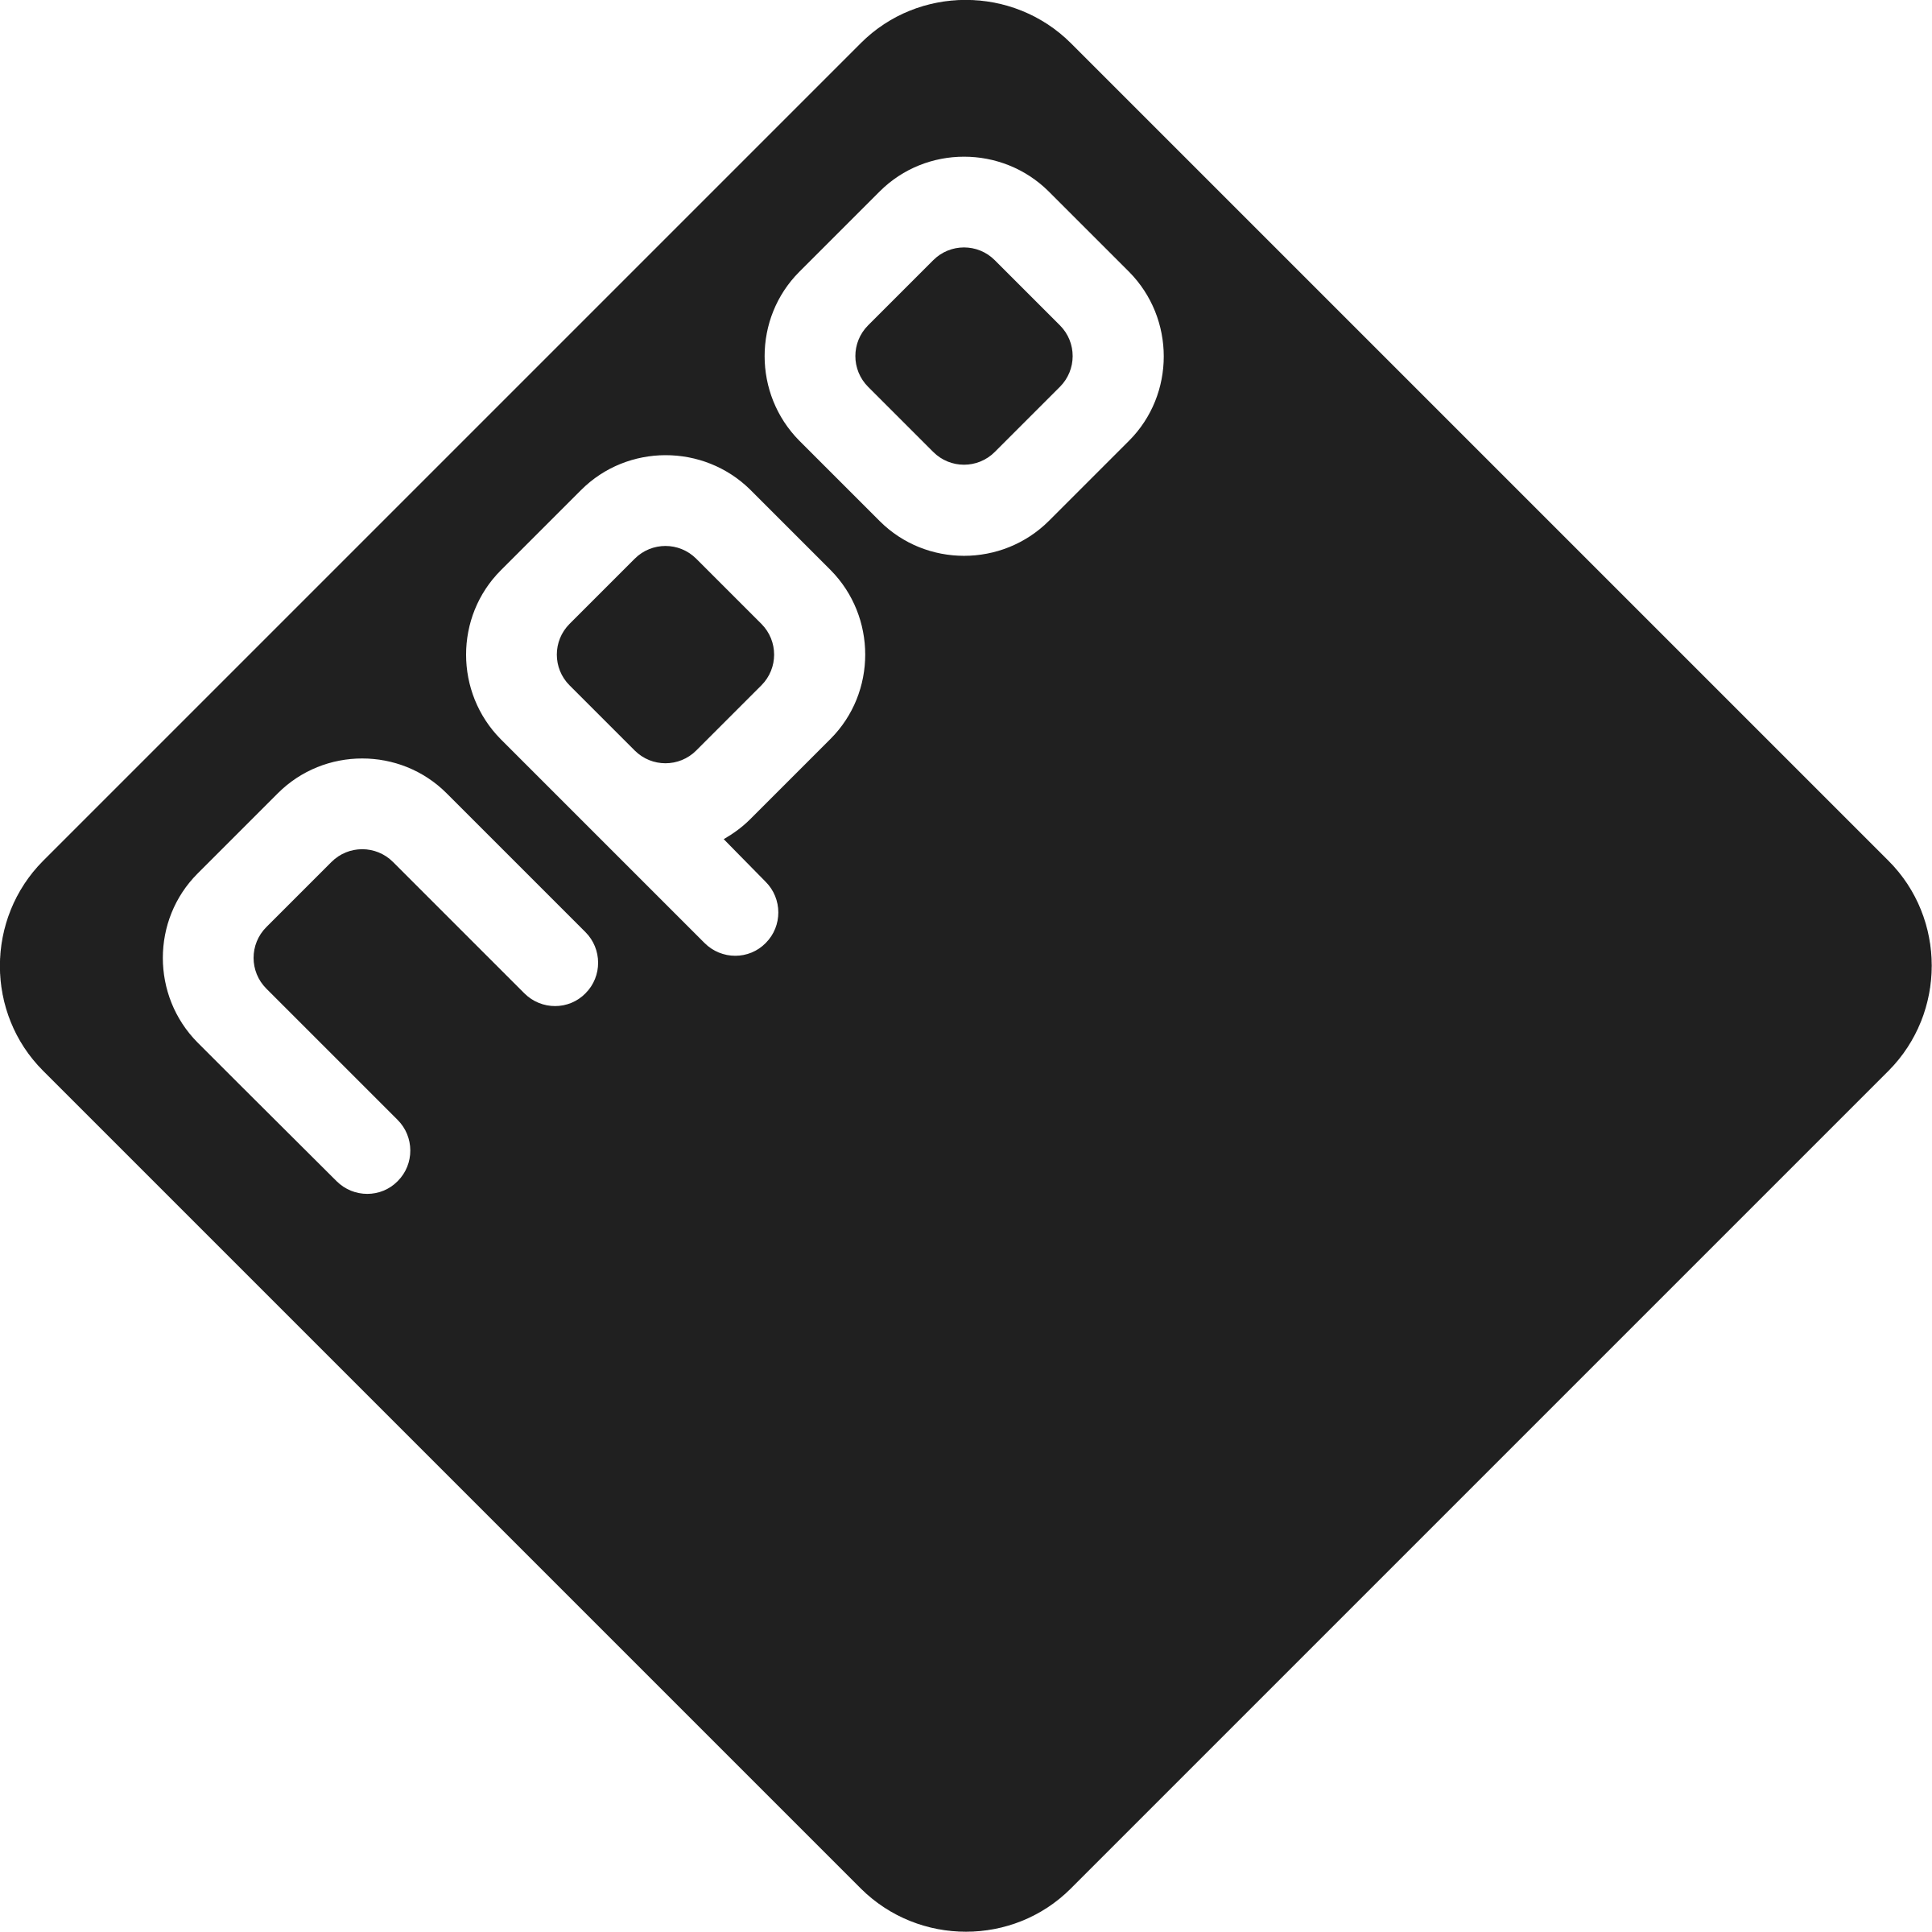 NPO Logo - NPO Logo PNG Transparent & SVG Vector